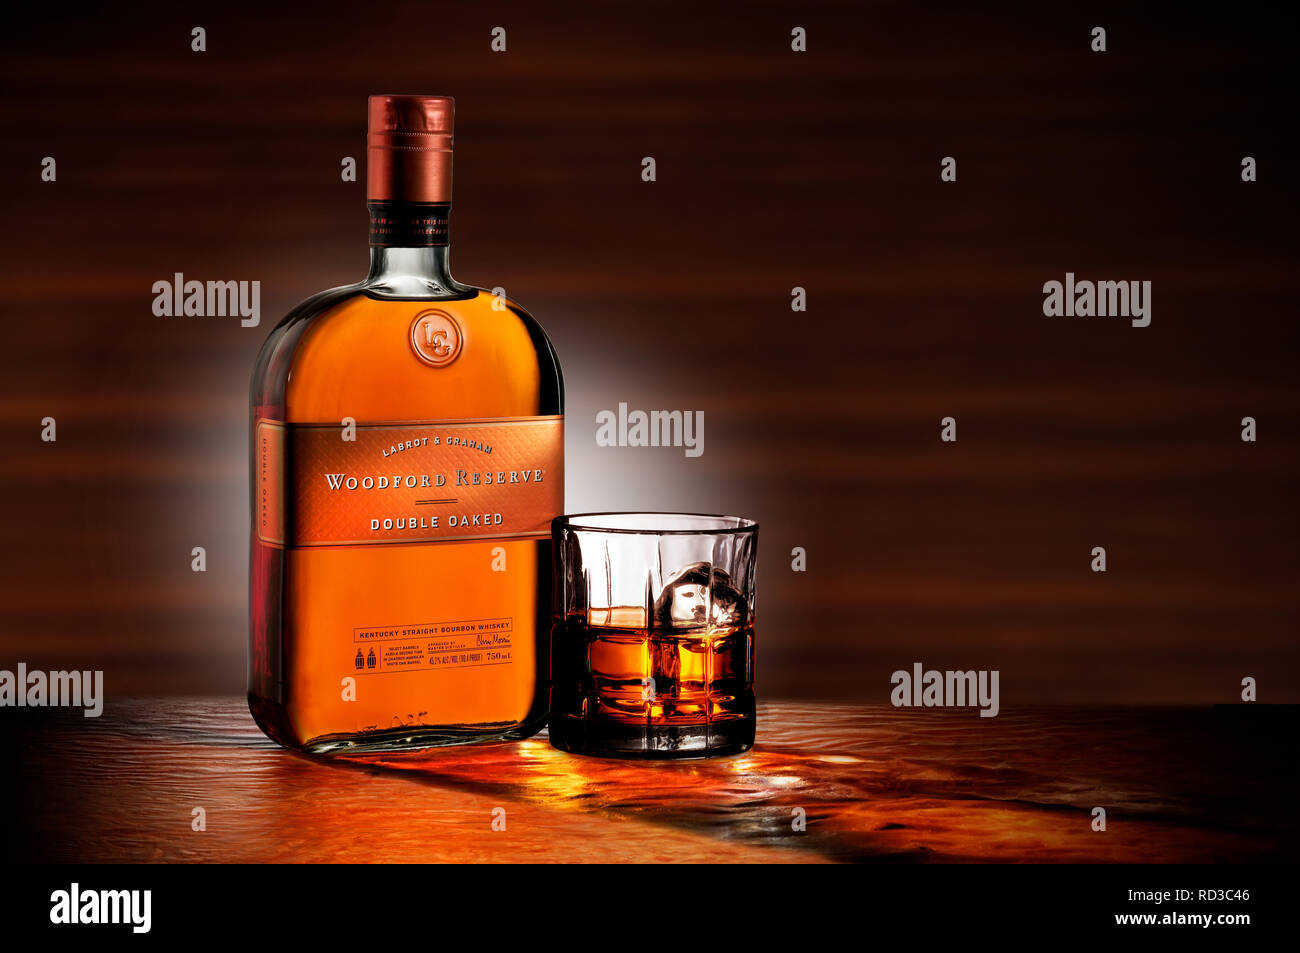 Farbe Bild der Flasche Woodford Reserve Whisky und ein Glas Whisky, Studio shot Stockfoto